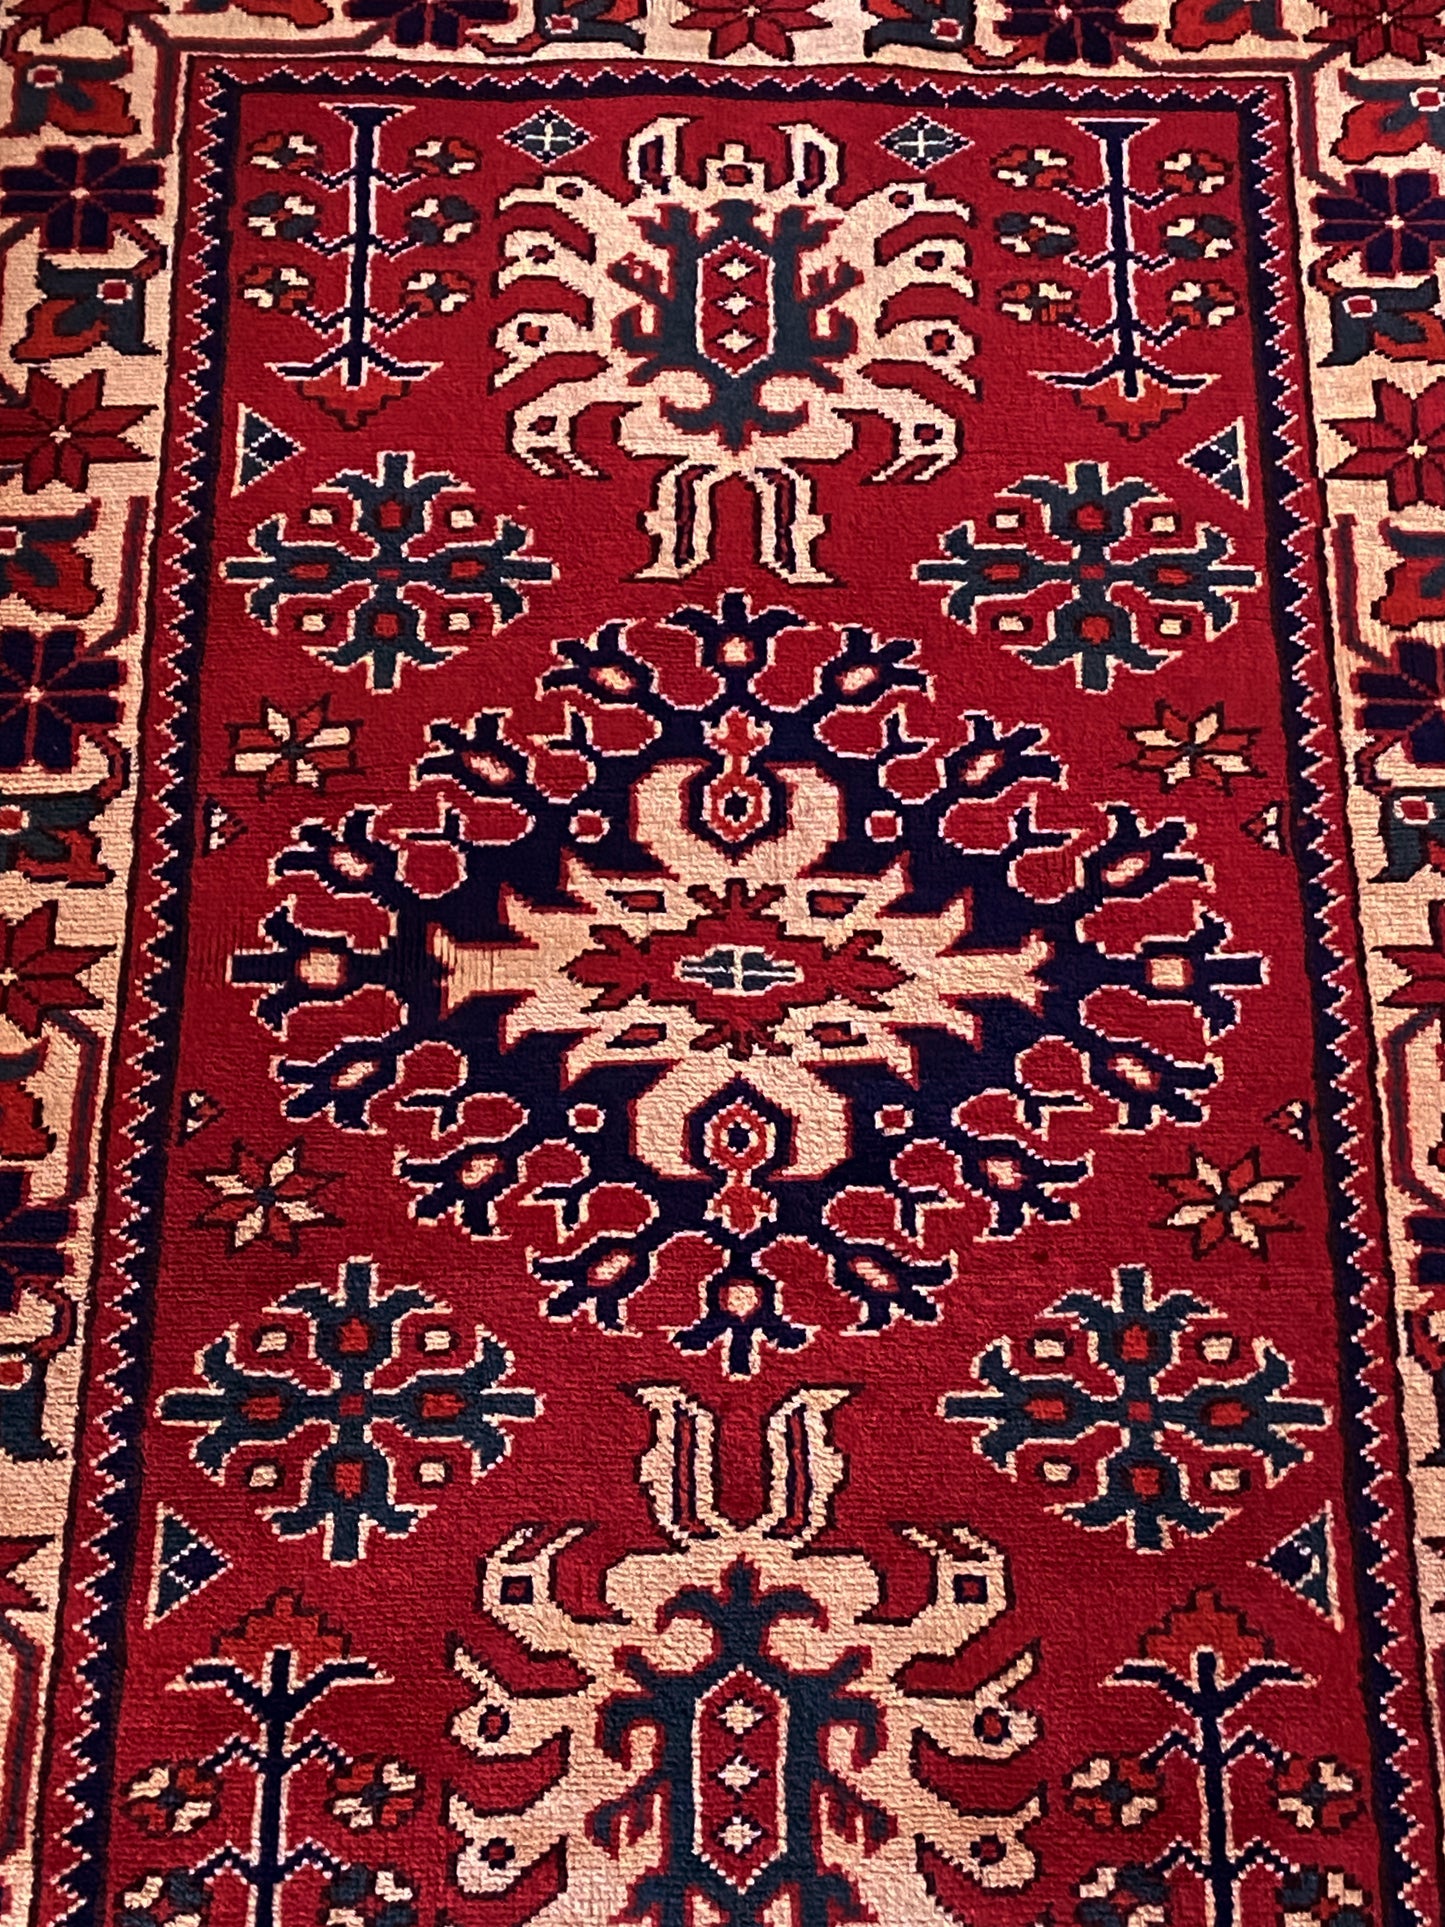 #3967 Colorful Vintage Turkish Wool Rug 4.3' by 2.6'